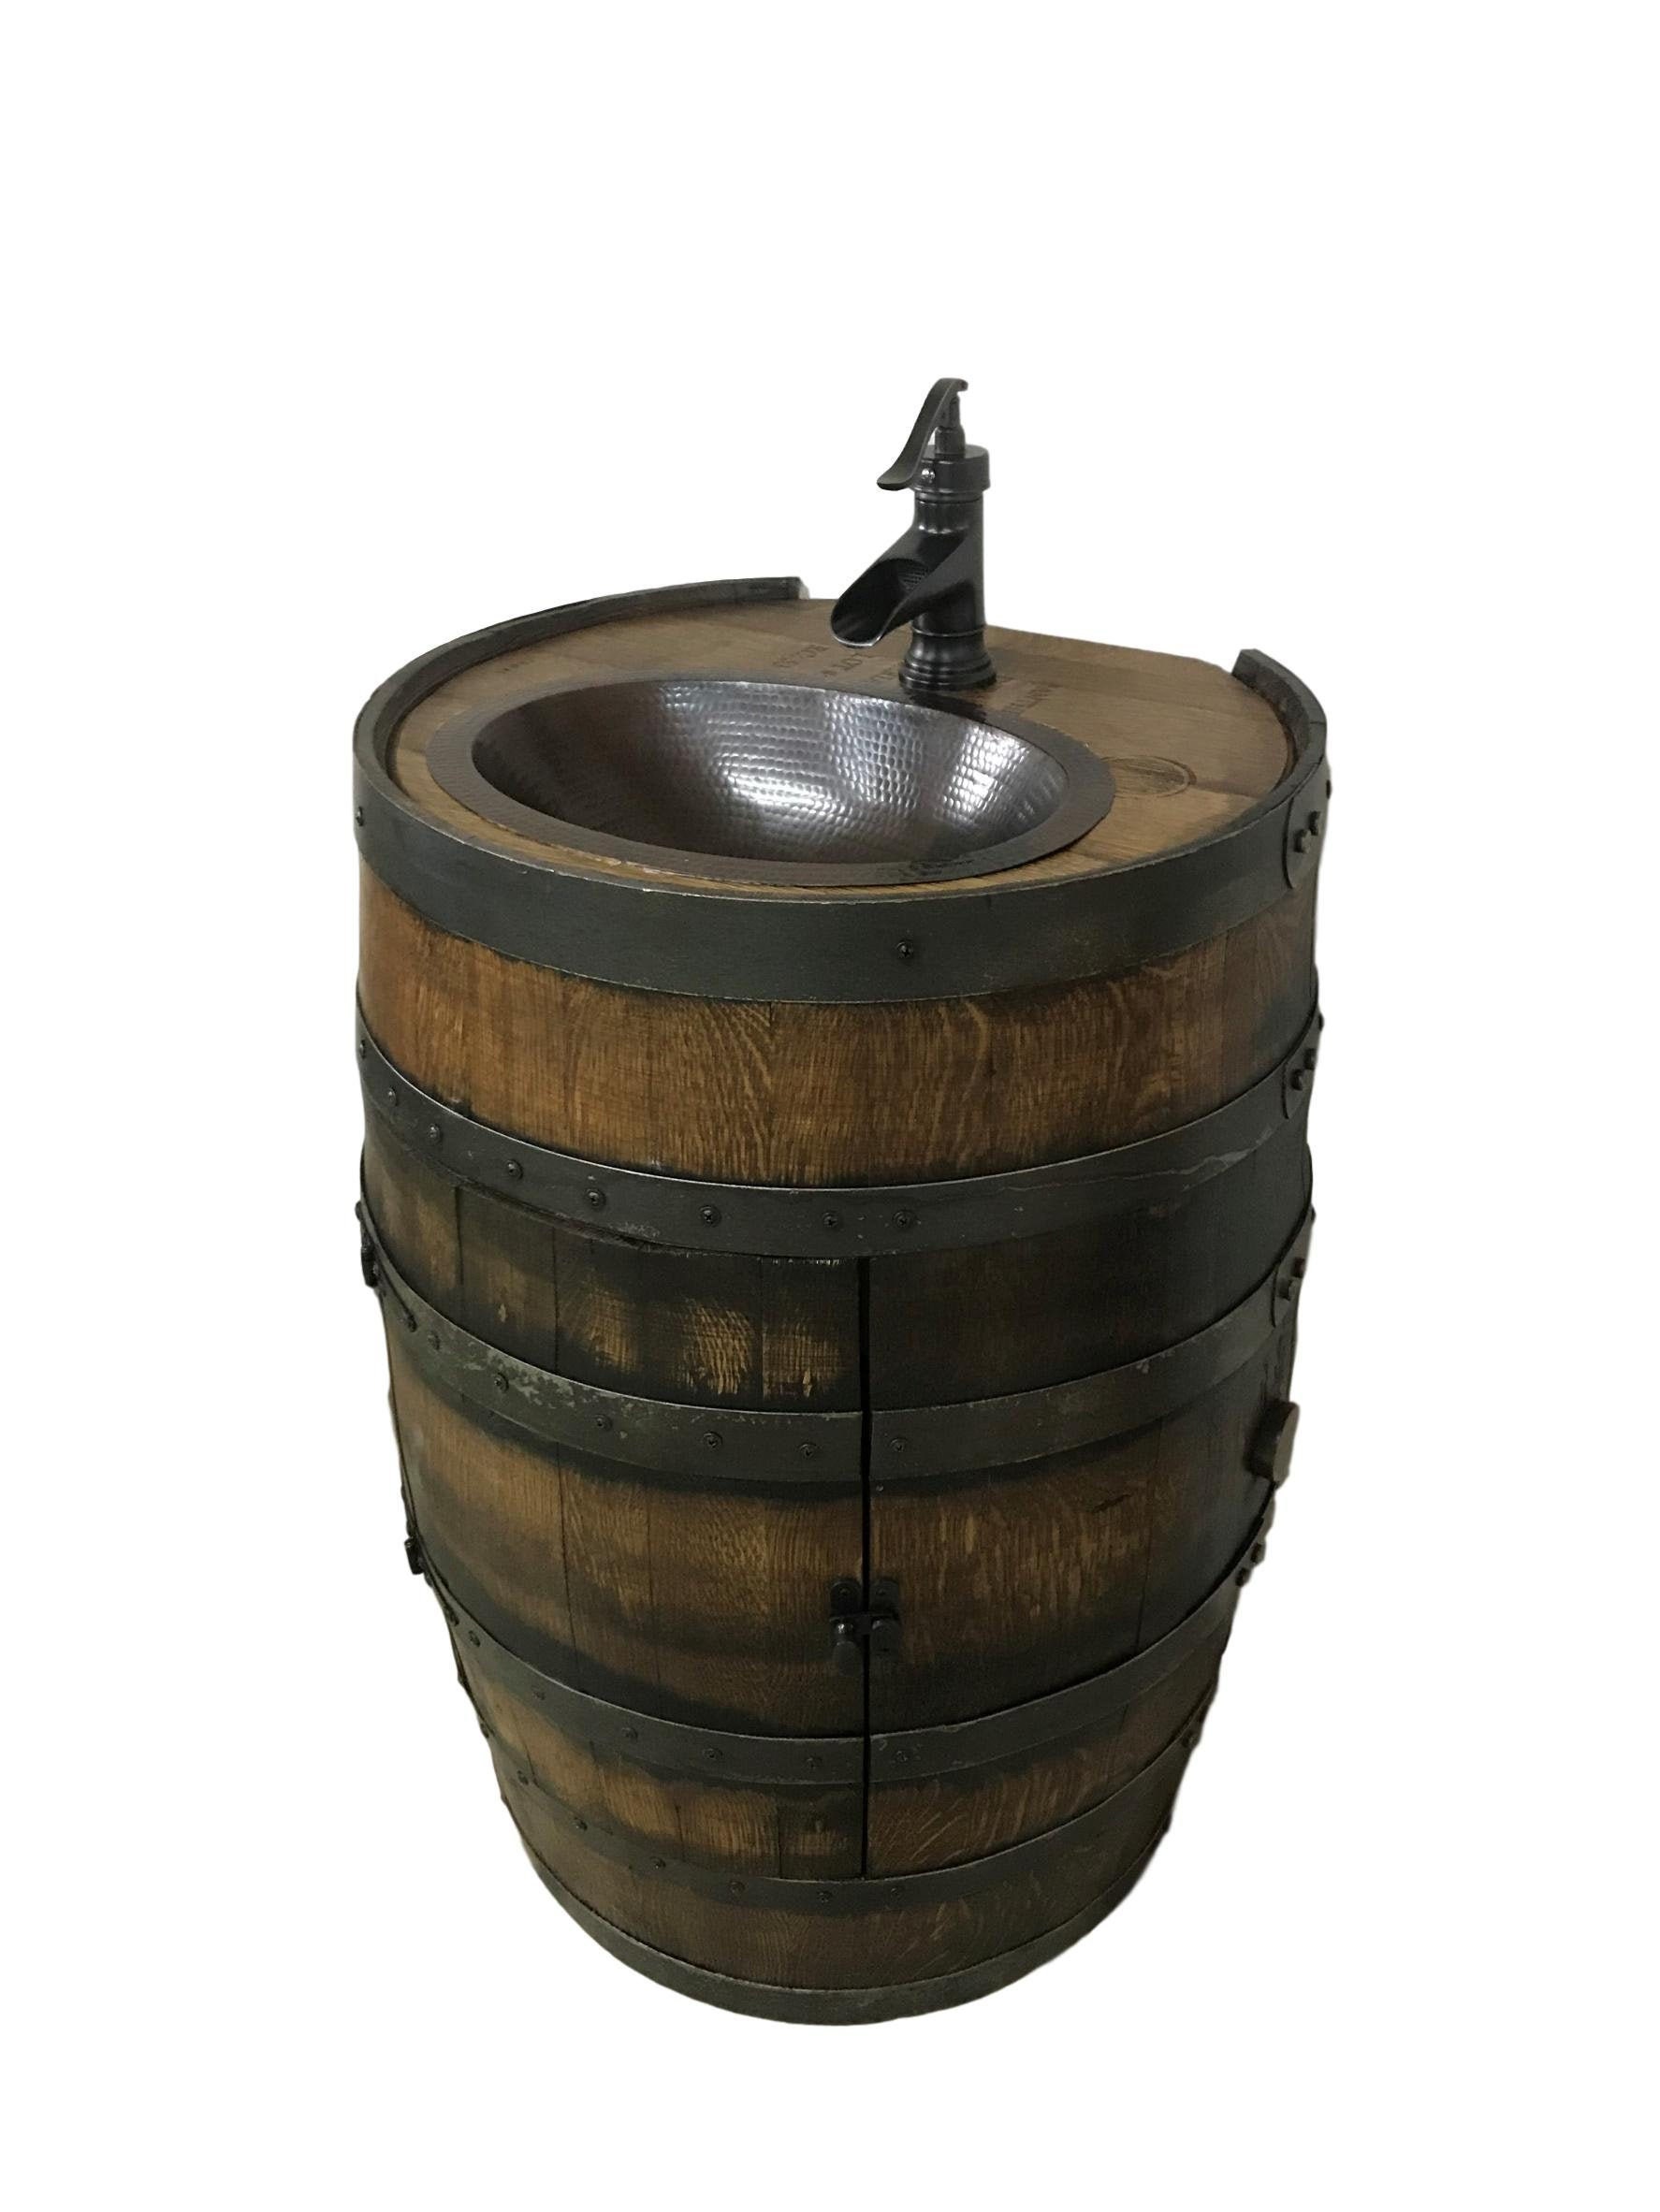 Instant barrel rust фото 108